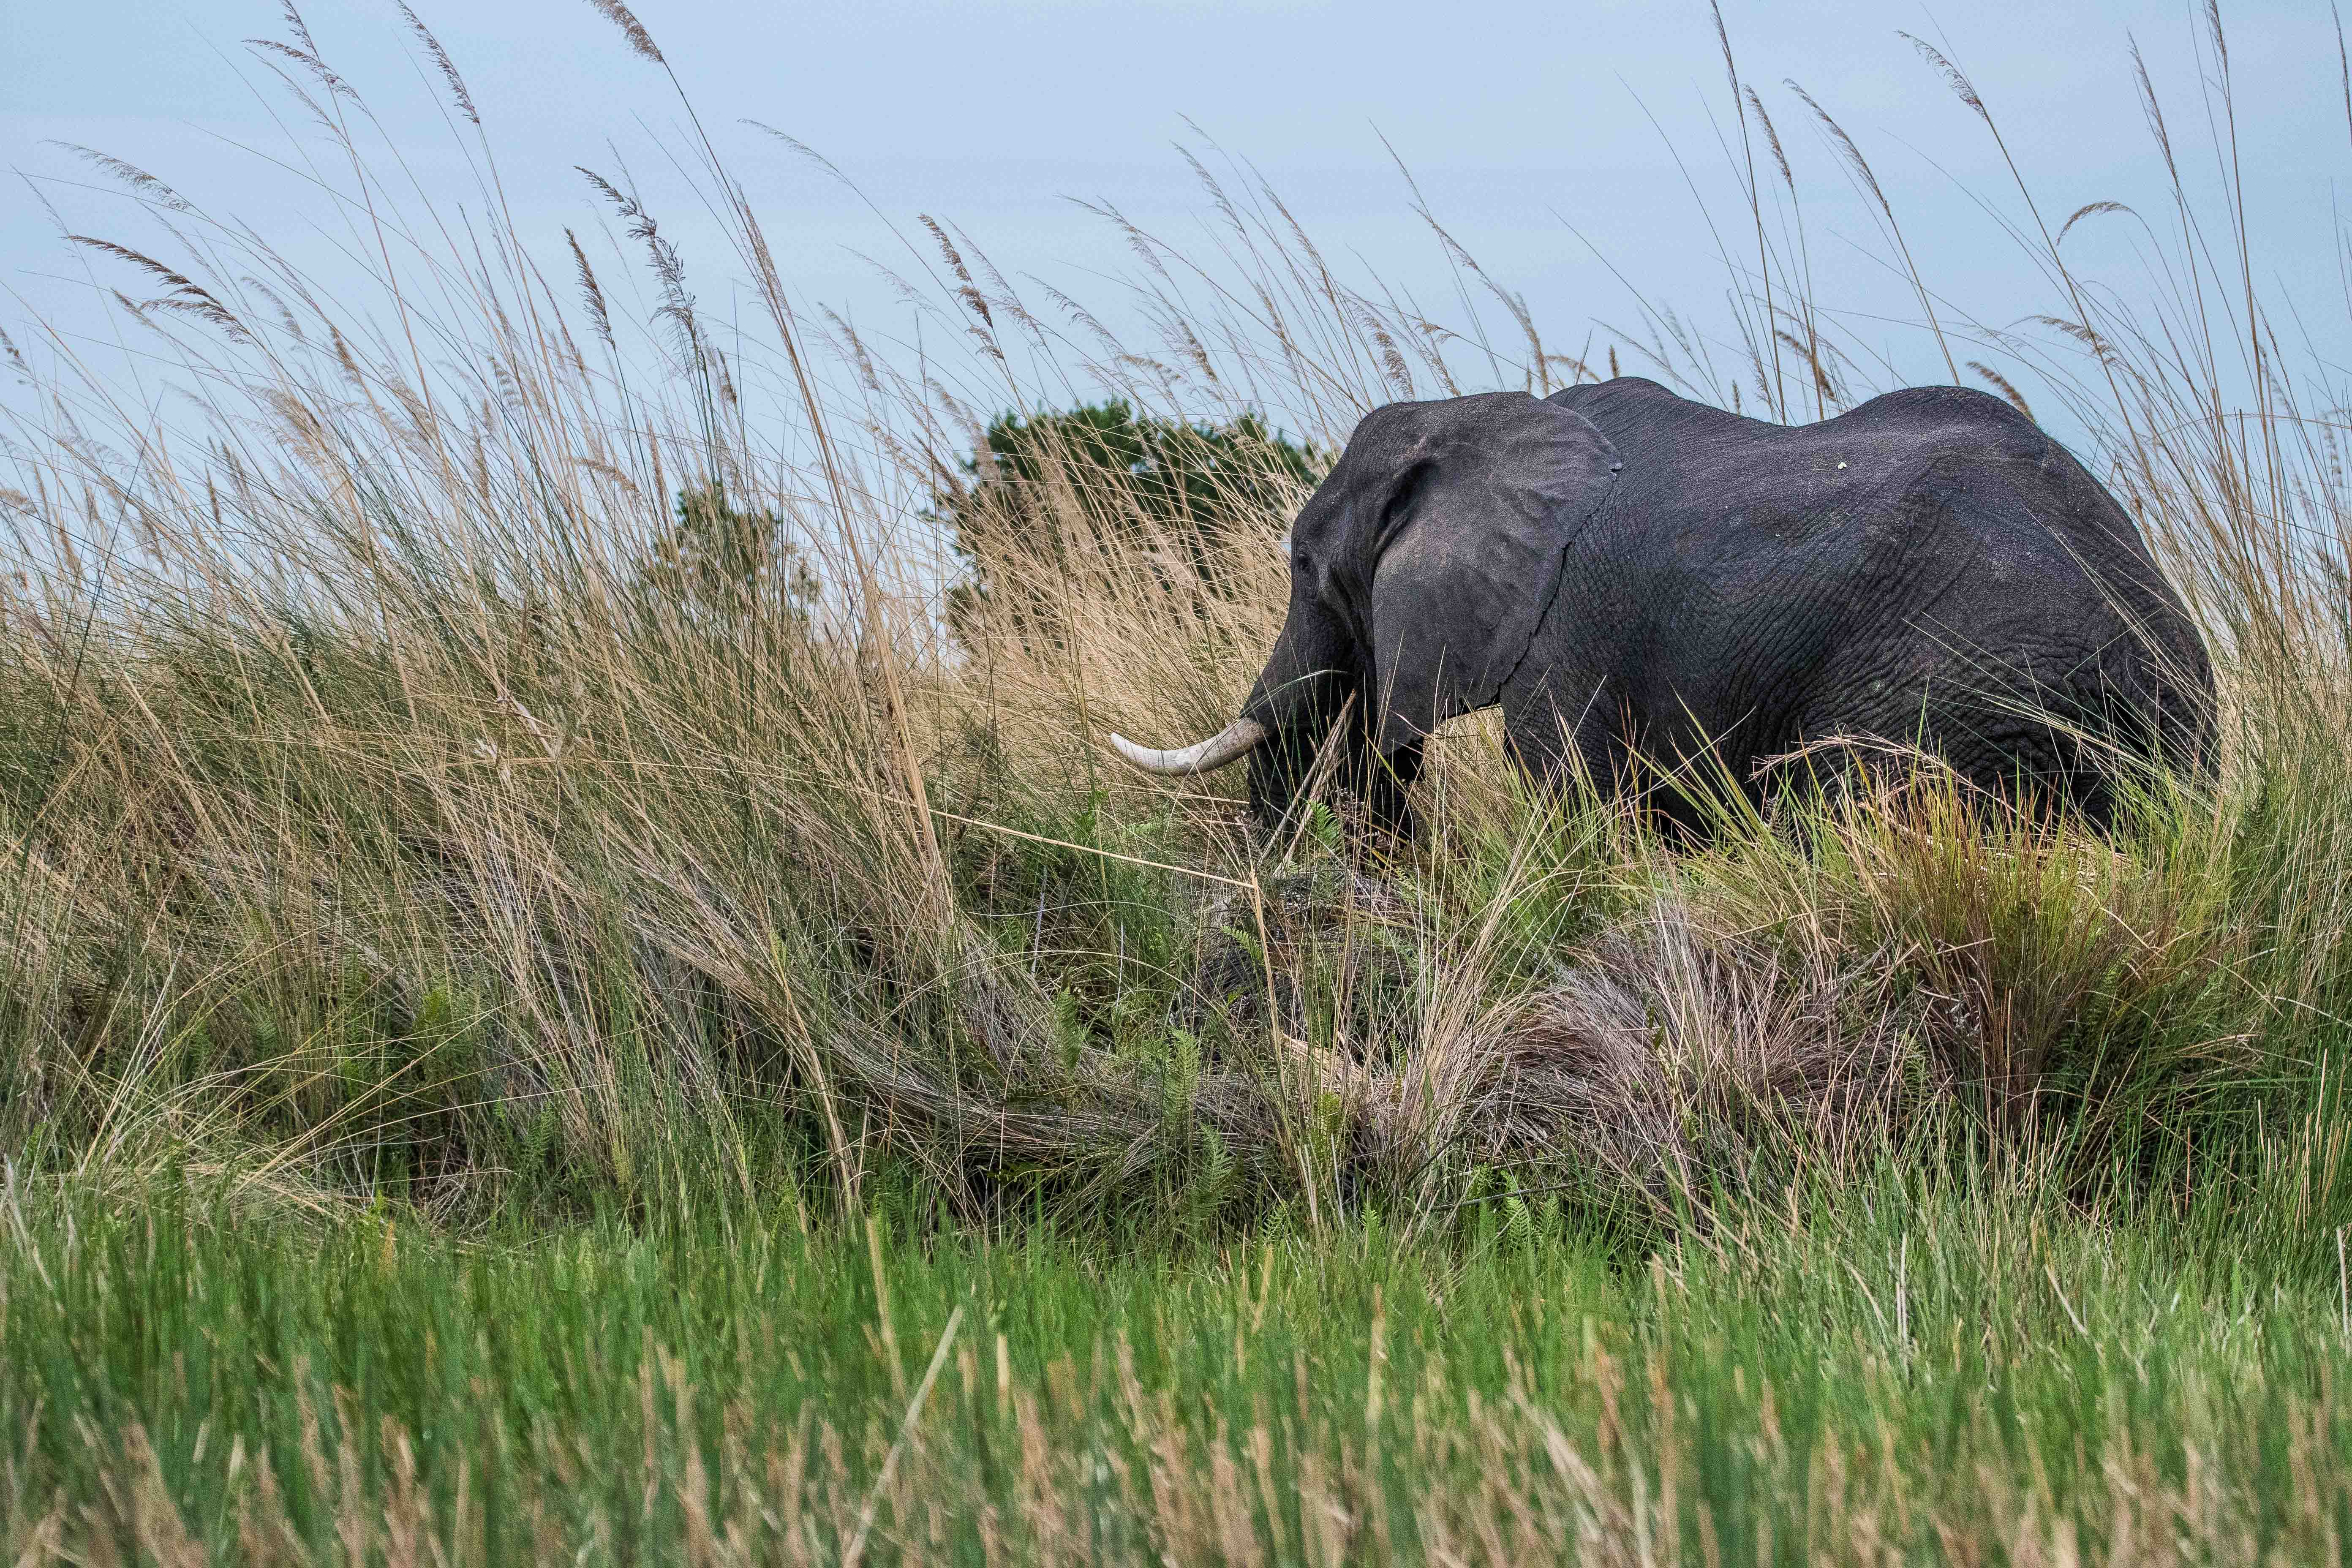 Eléphant de savanes africain (African bush elephant, Loxodonta africana), vieux mâle solitaire probablement en fin de vie se nourrissant d'herbe le long du Magweggana spillway, Botswana.